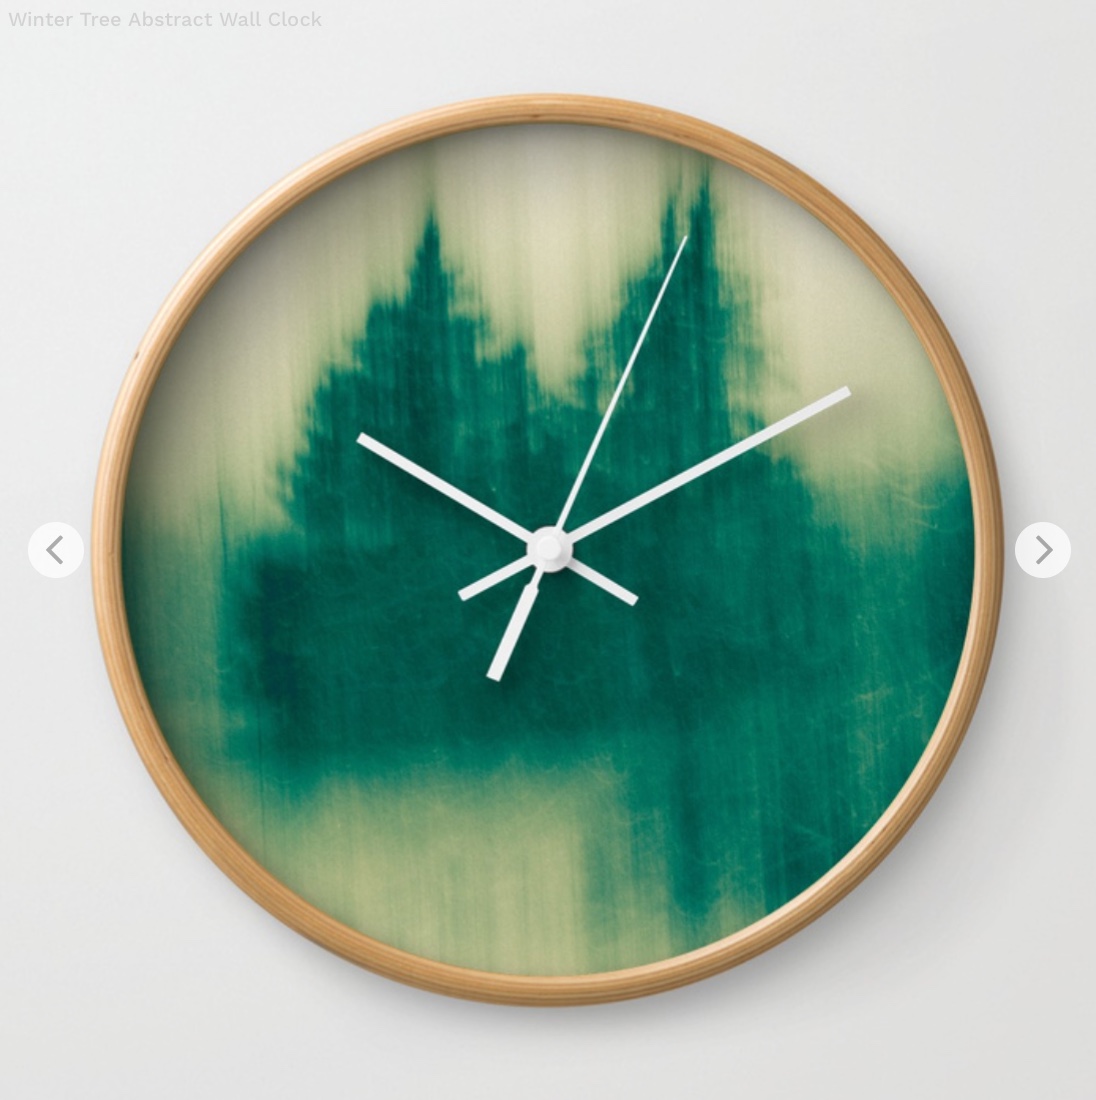 Winter Tree Abstract Wall Clock by joystclaire | Society6